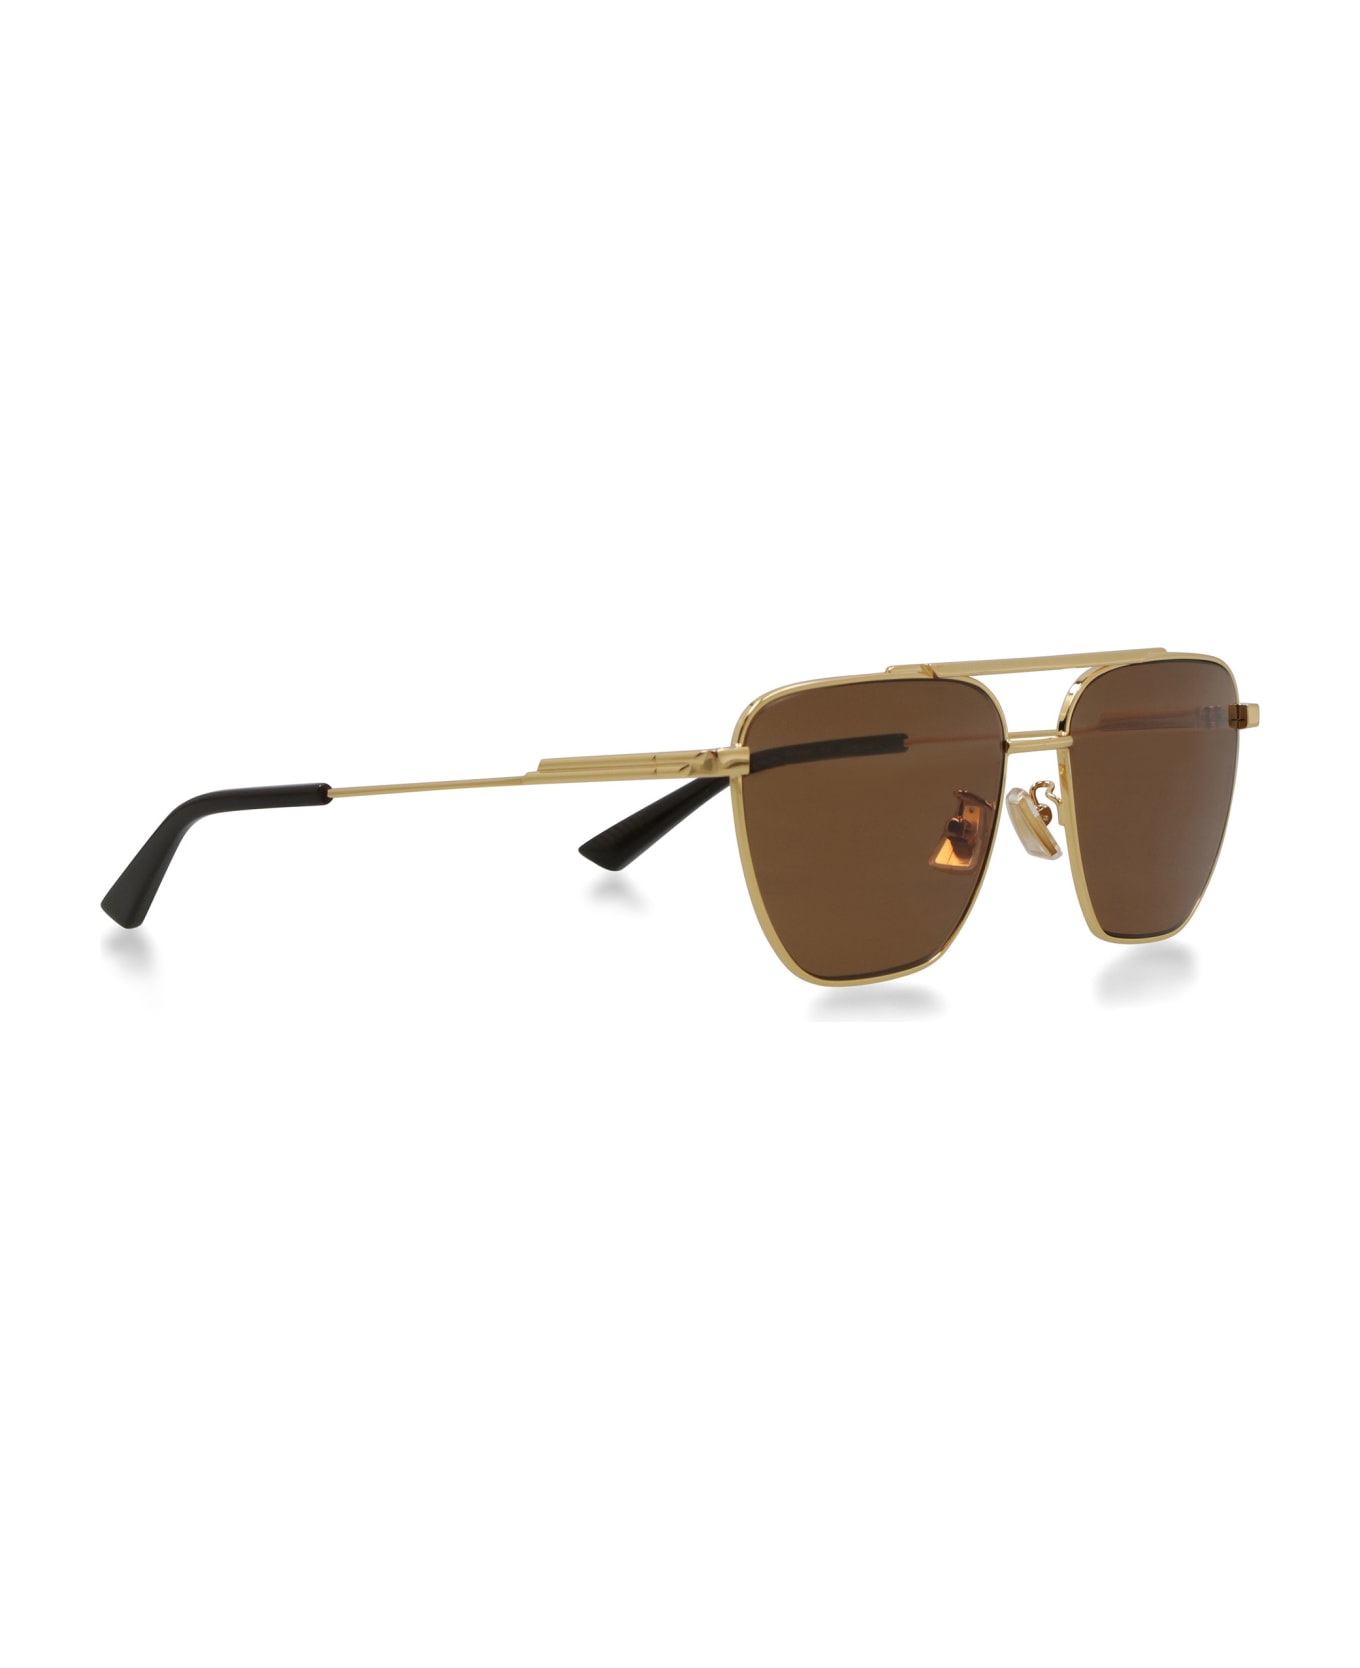 Bottega Veneta Aviatore Classic Sunglasses - Gold